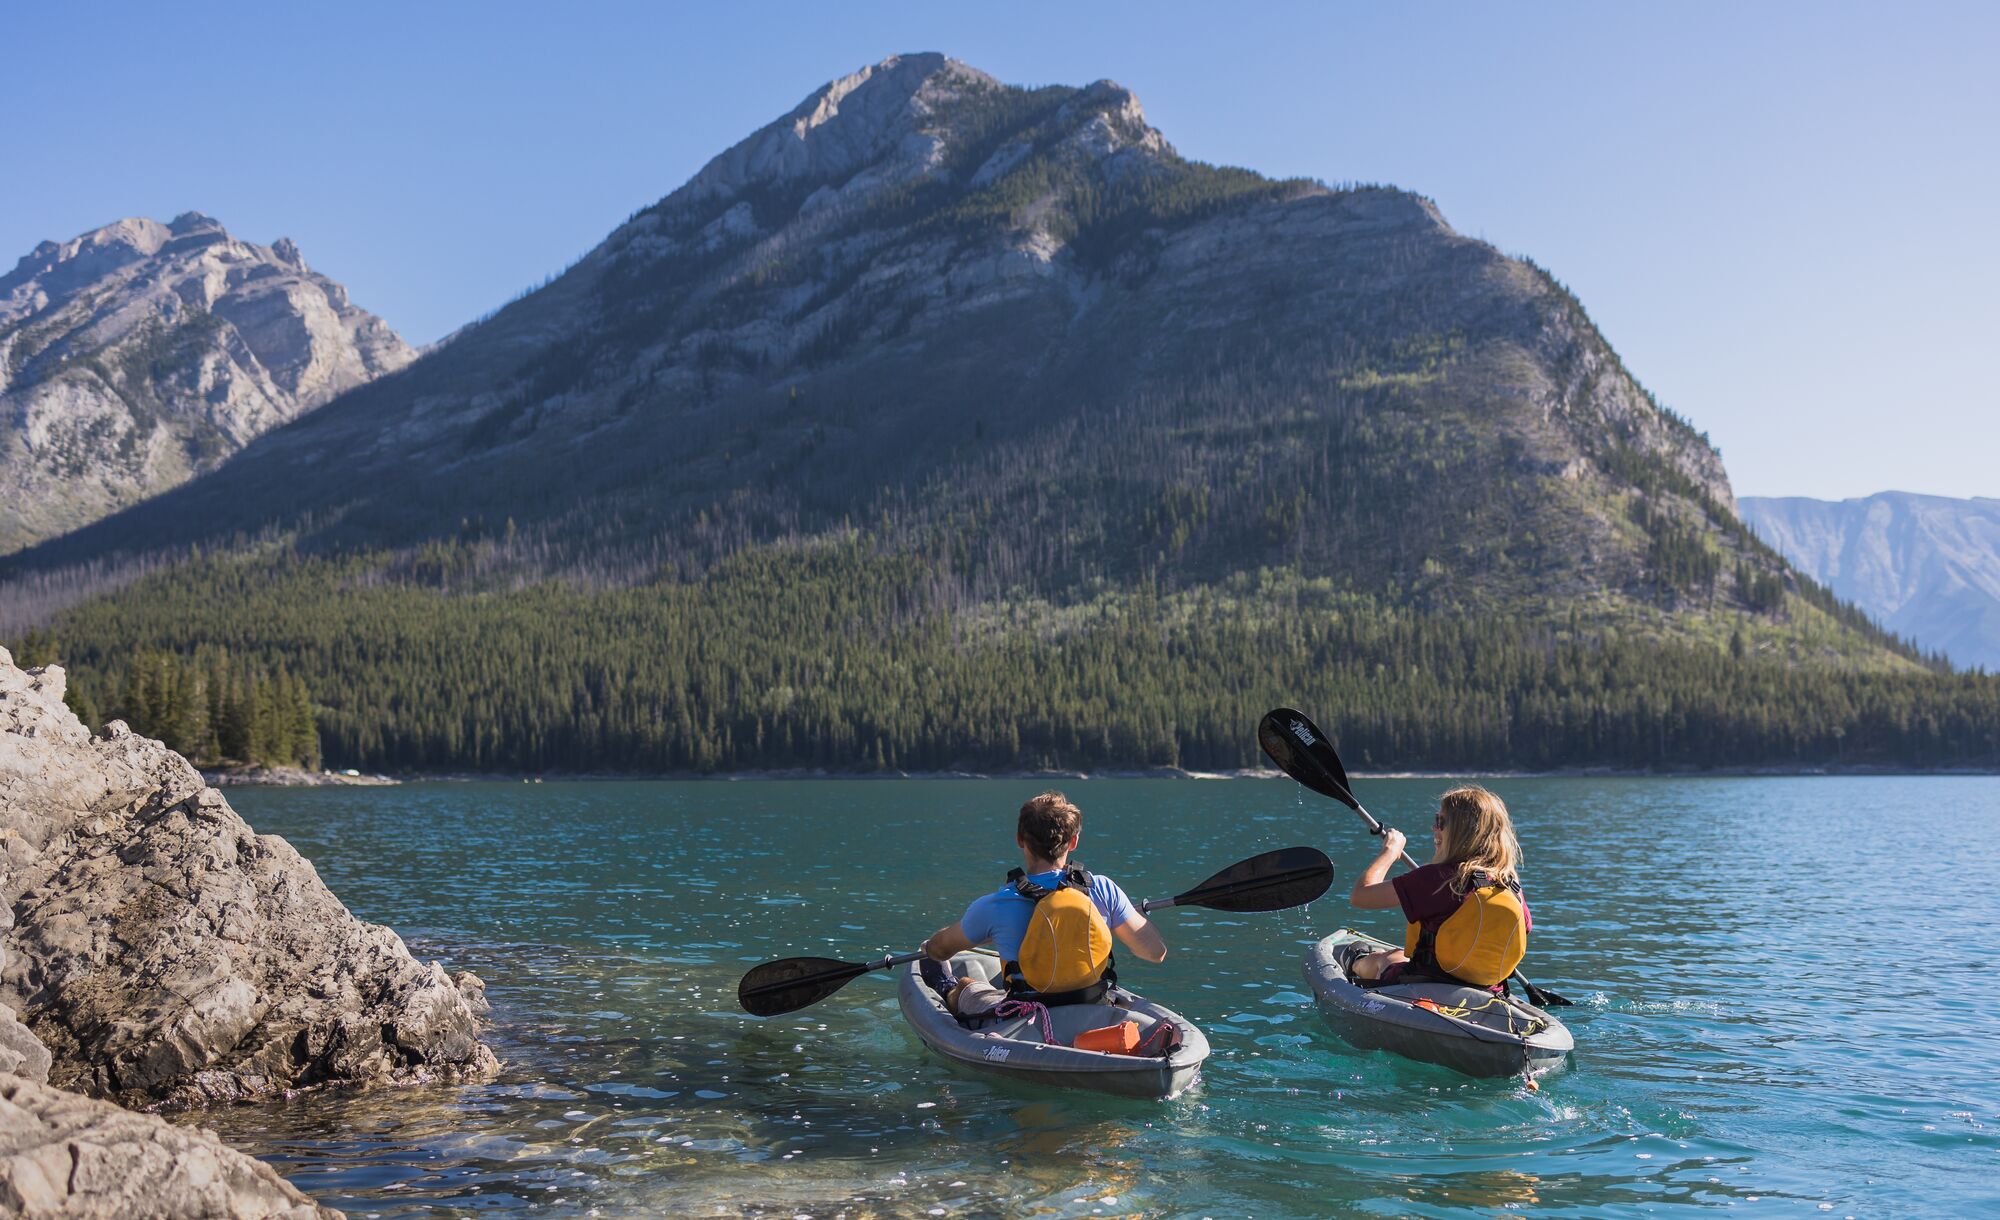 Two people kayak on Lake Minnewanka in Banff National Park.